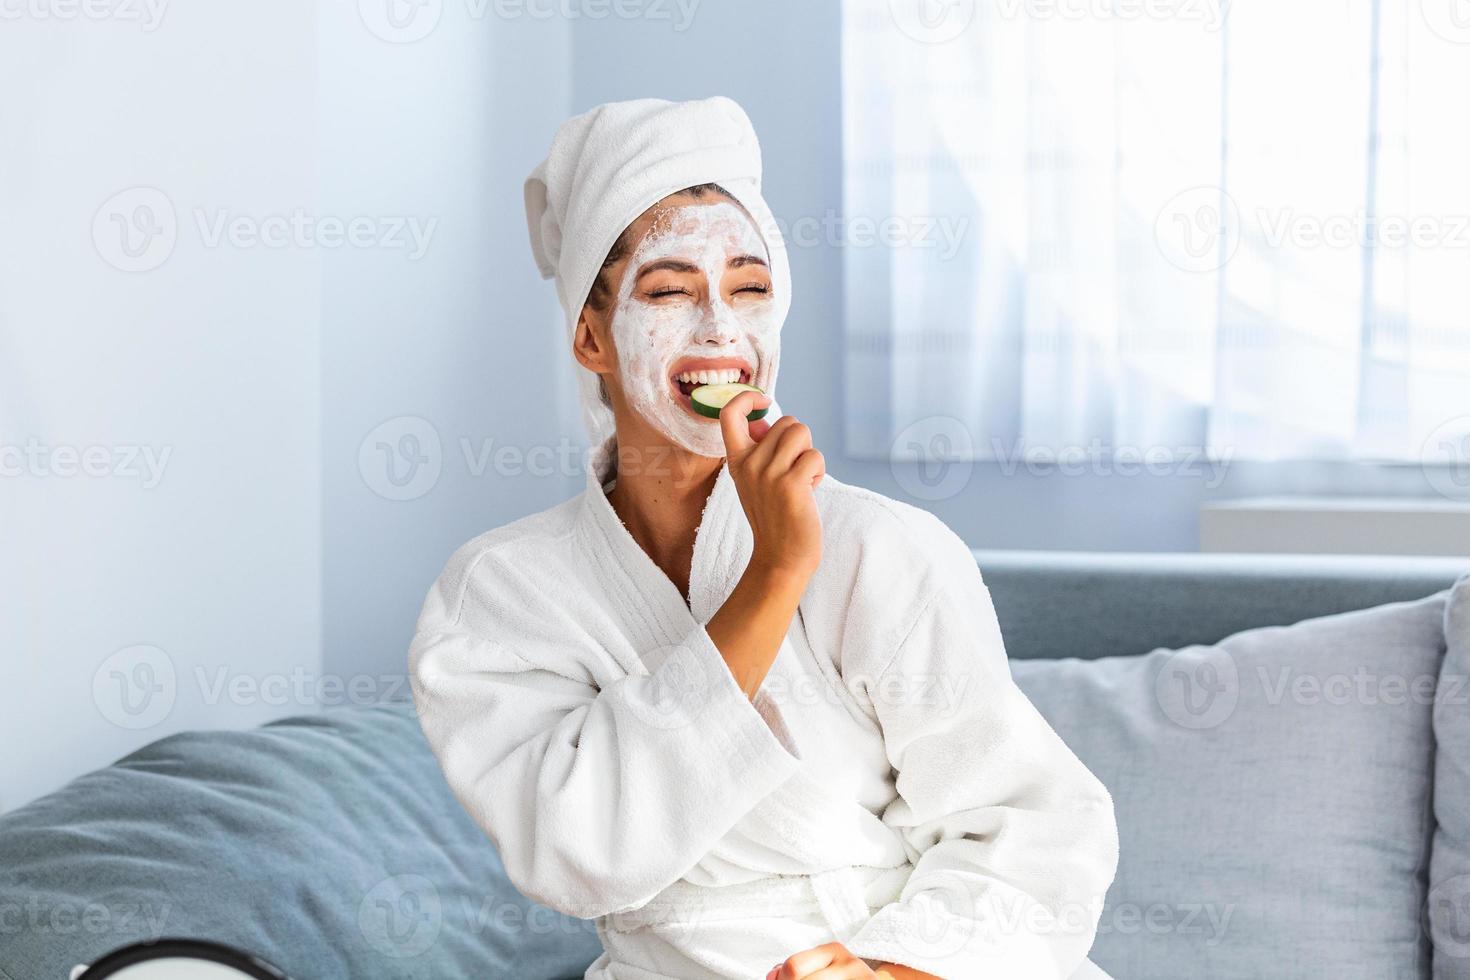 Schöne junge Frau mit Gesichtsmaske auf ihrem Gesicht, die frische Gurkenscheiben hält. hautpflege und behandlung, spa, natürliche schönheit und kosmetikkonzept foto